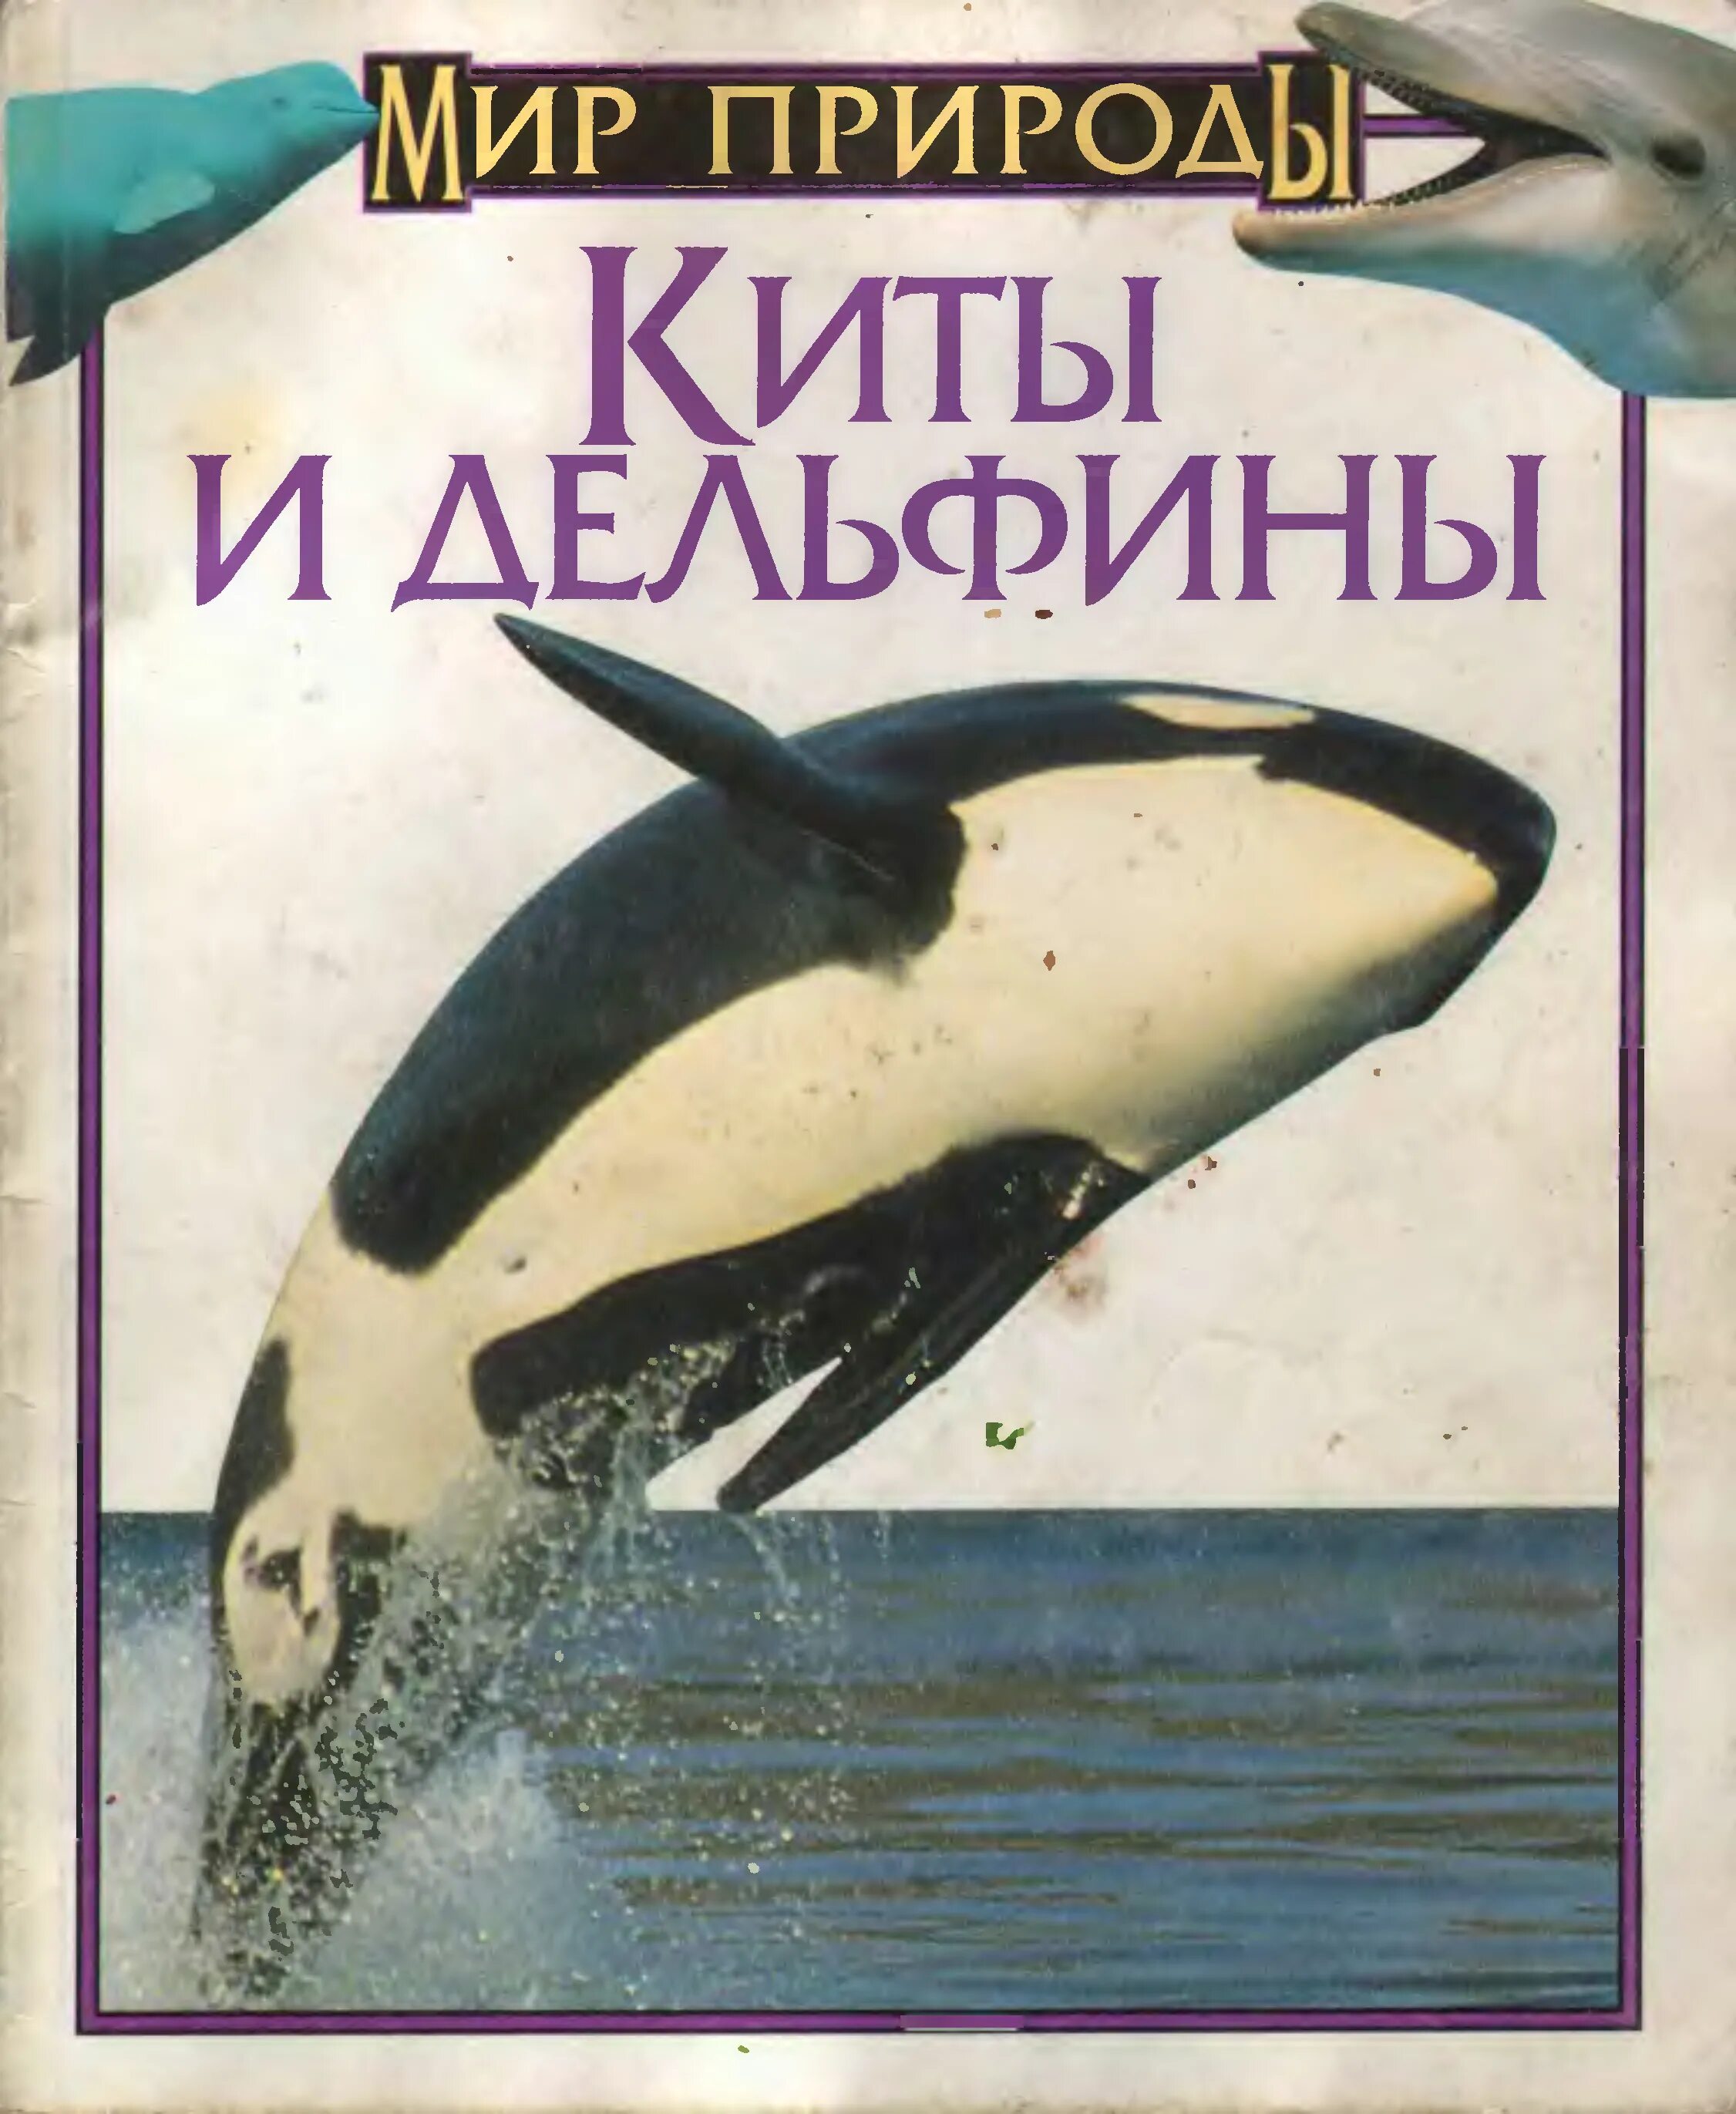 Книга про кита. Книга киты дельфины. Книги о китах и дельфинах для детей. Книга про китообразных.